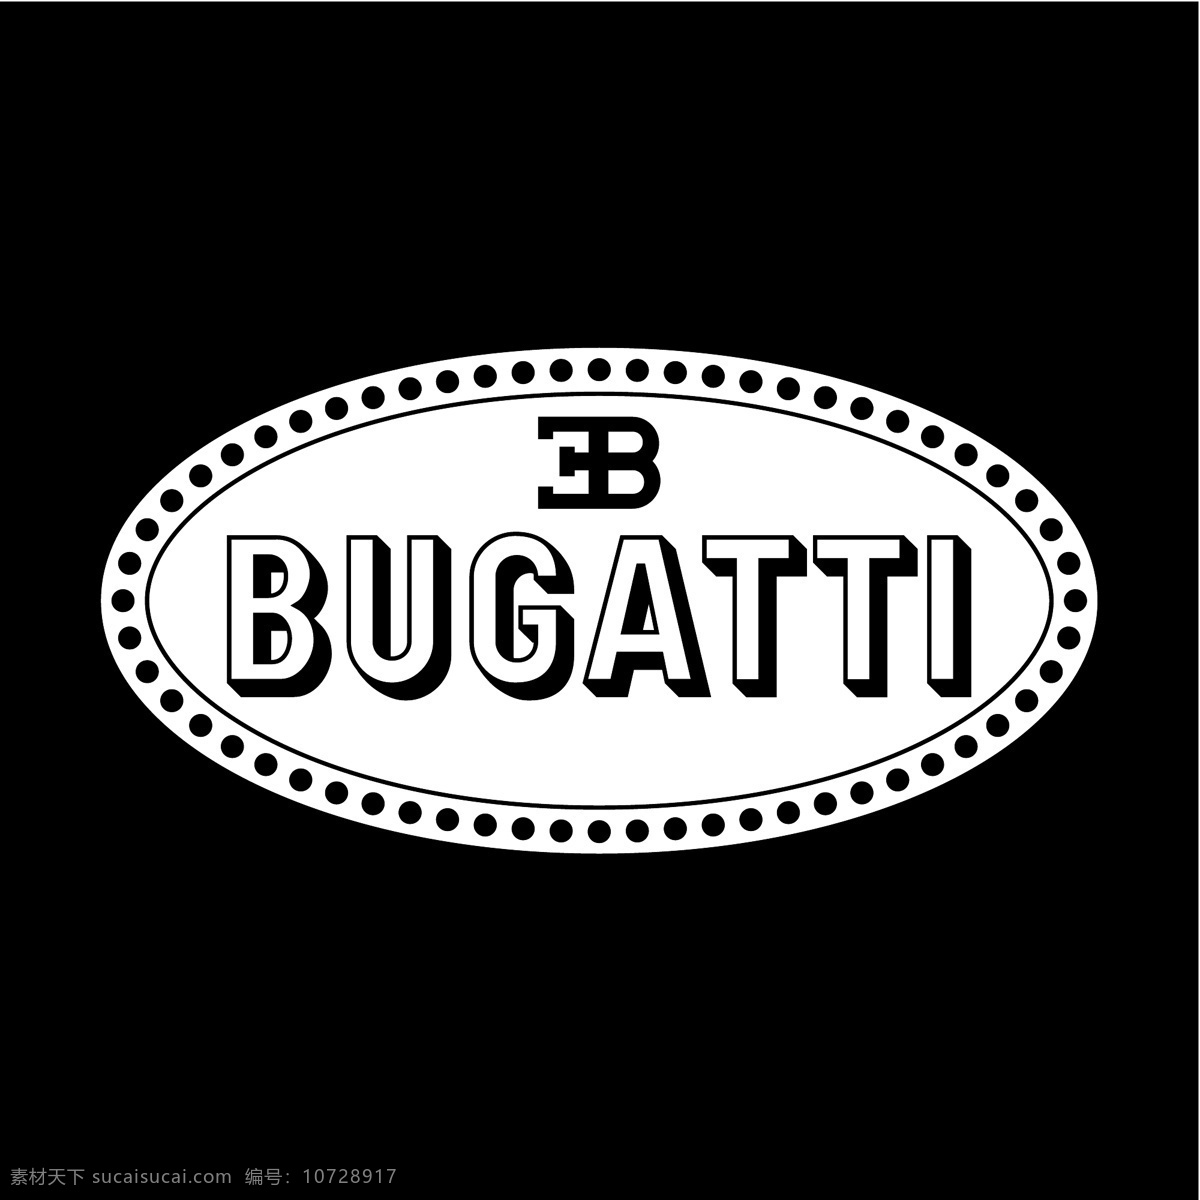 布加迪2 布加迪 布 加迪 标志 矢量 布加迪威龙 布加迪标志 布加迪向量 向量 加 迪布 汽车 布加迪汽车 威龙 布加迪车 黑色